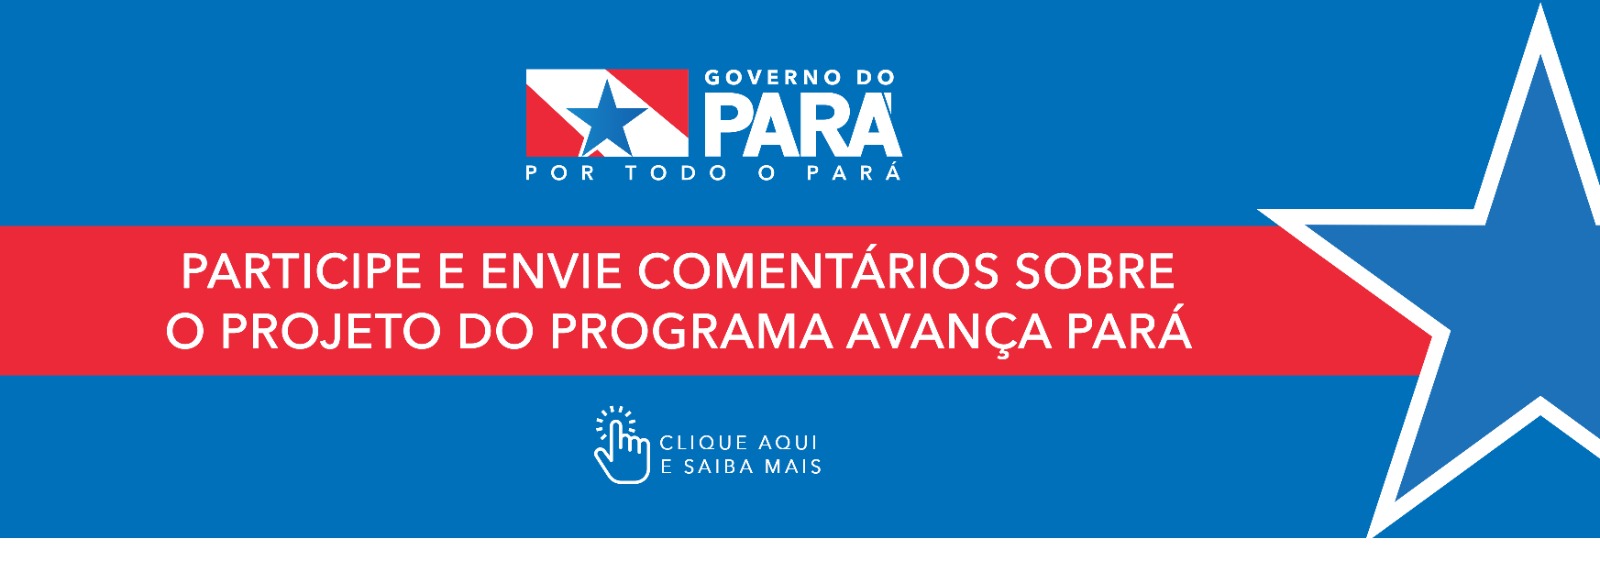 notícia: Programa Avanca Pará